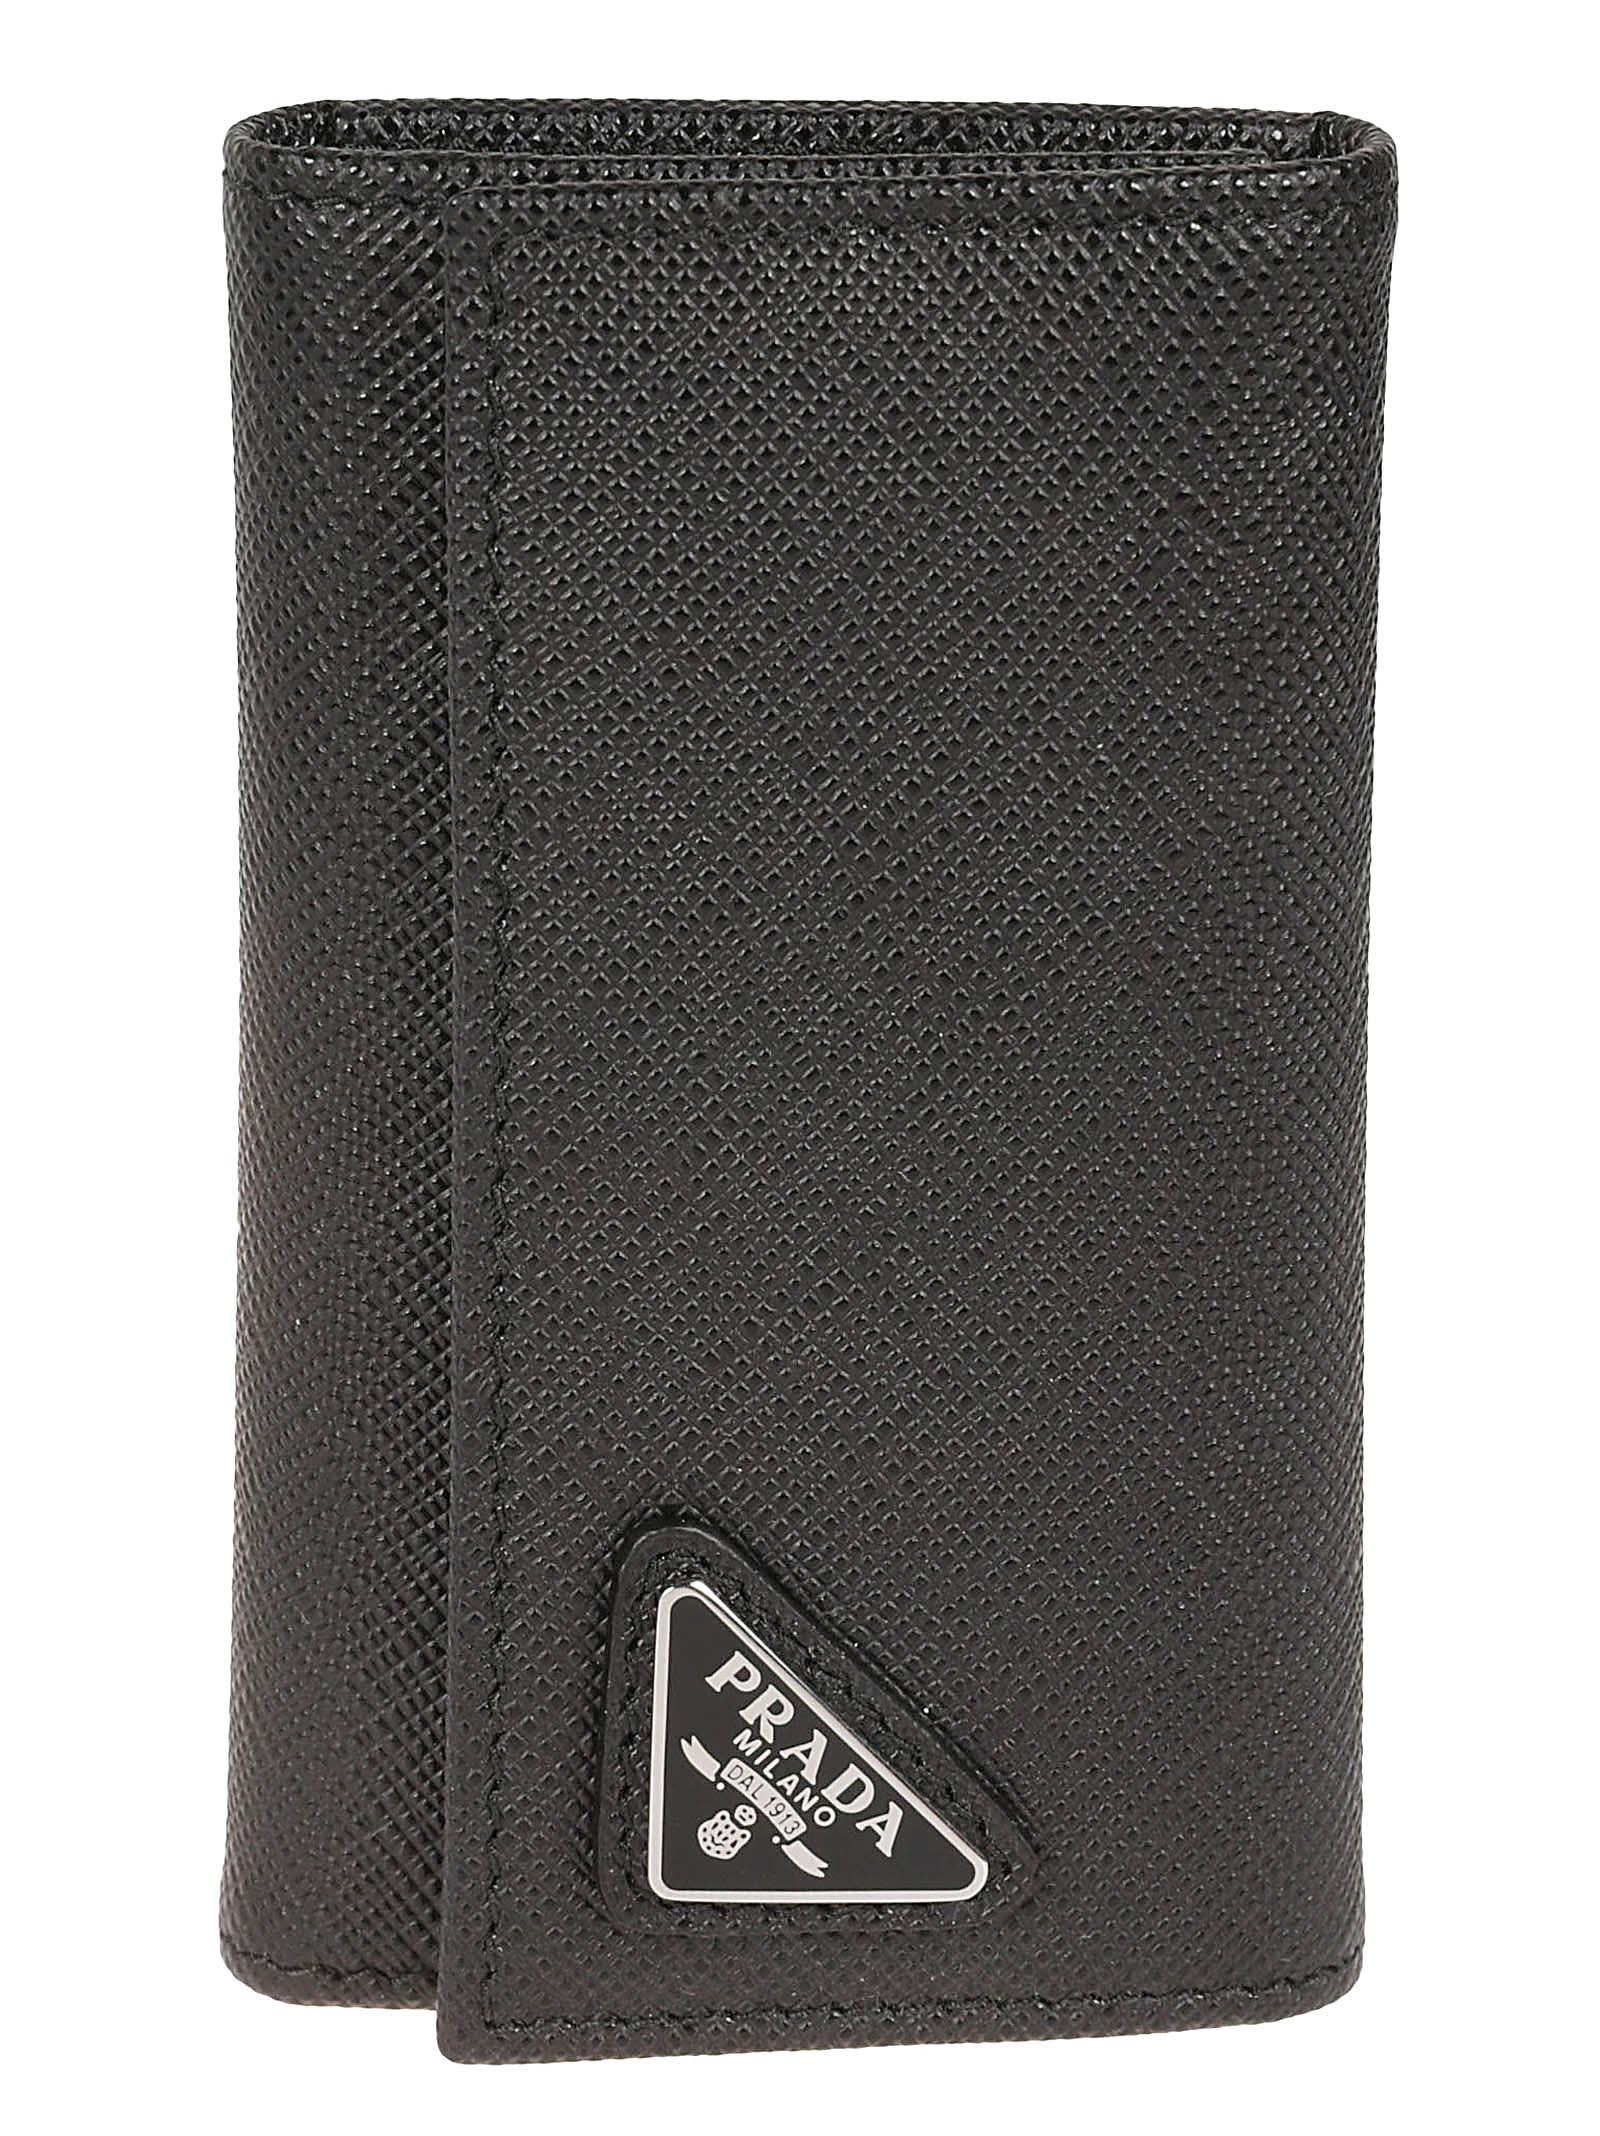 Prada Logo Plaque Key Holder in Black for Men